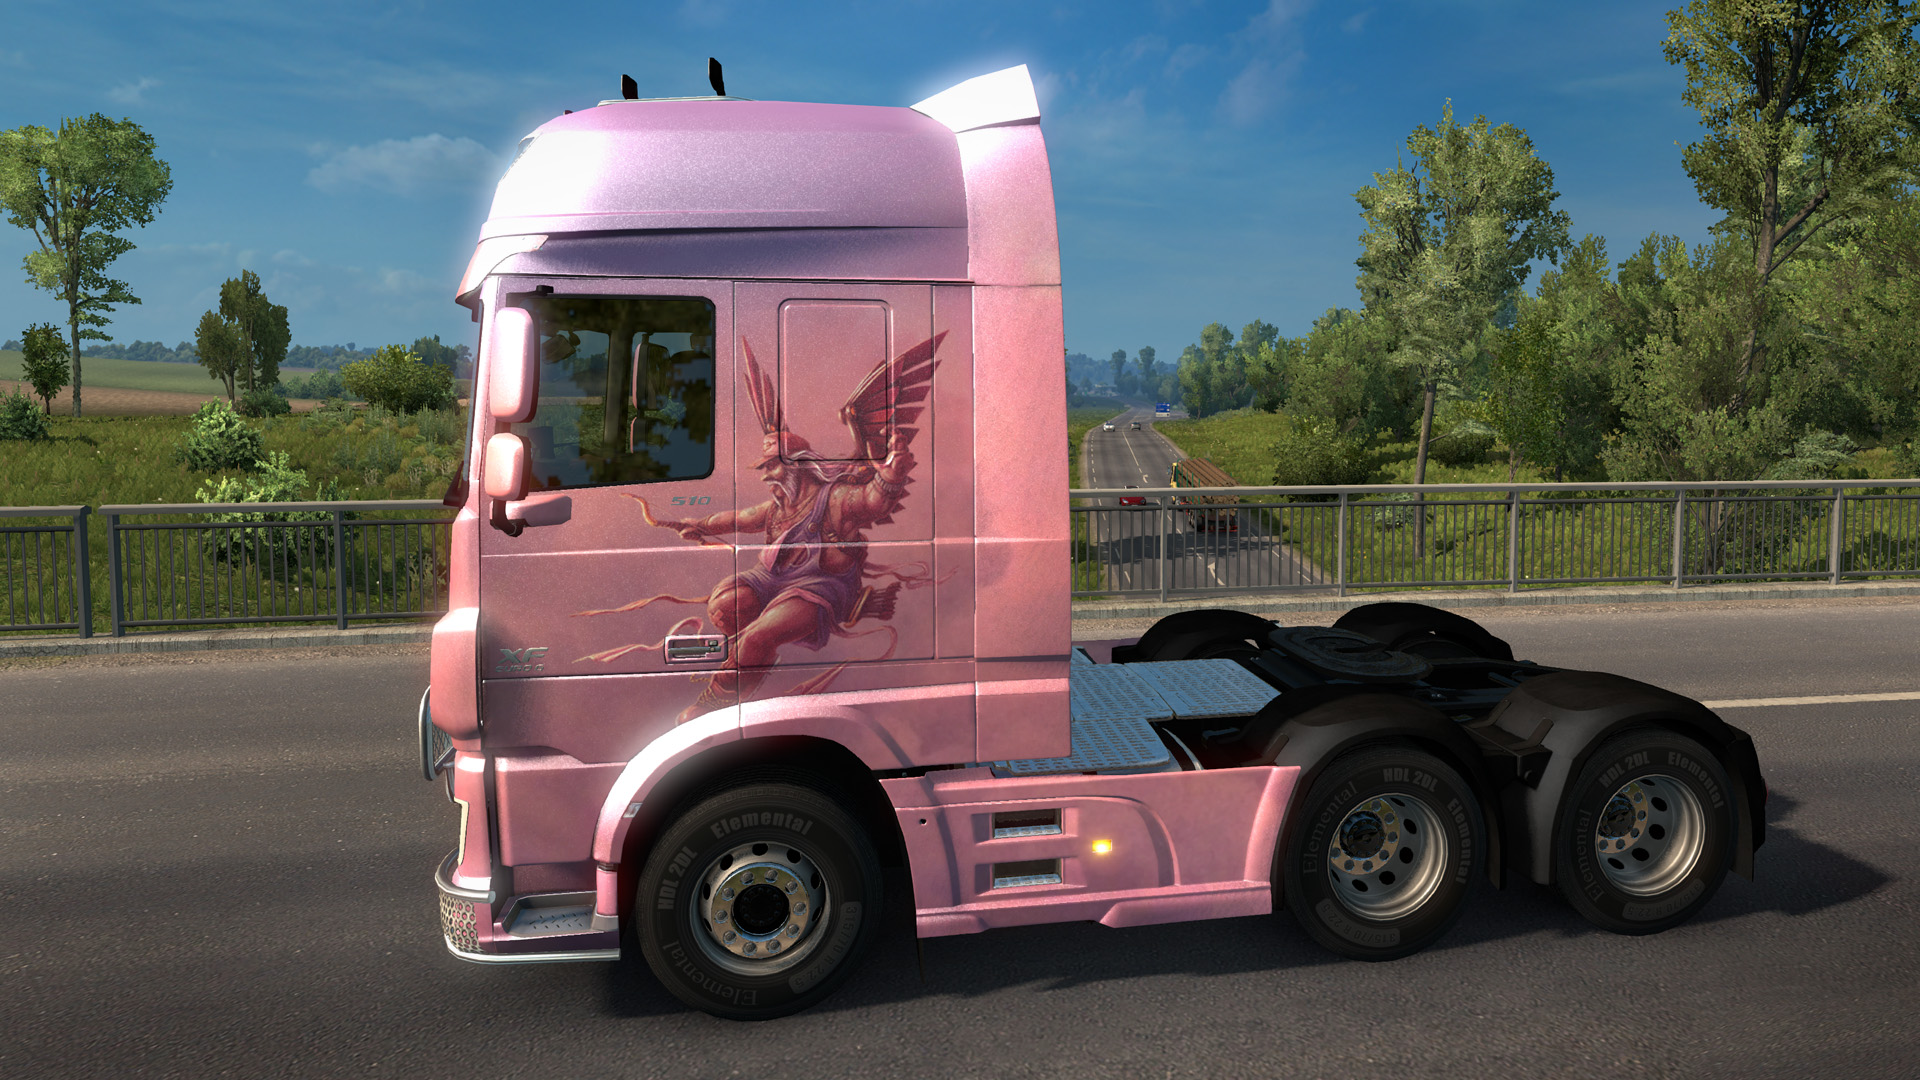 Euro Truck Simulator 2 - Valentine's Paint Jobs Pack screenshot